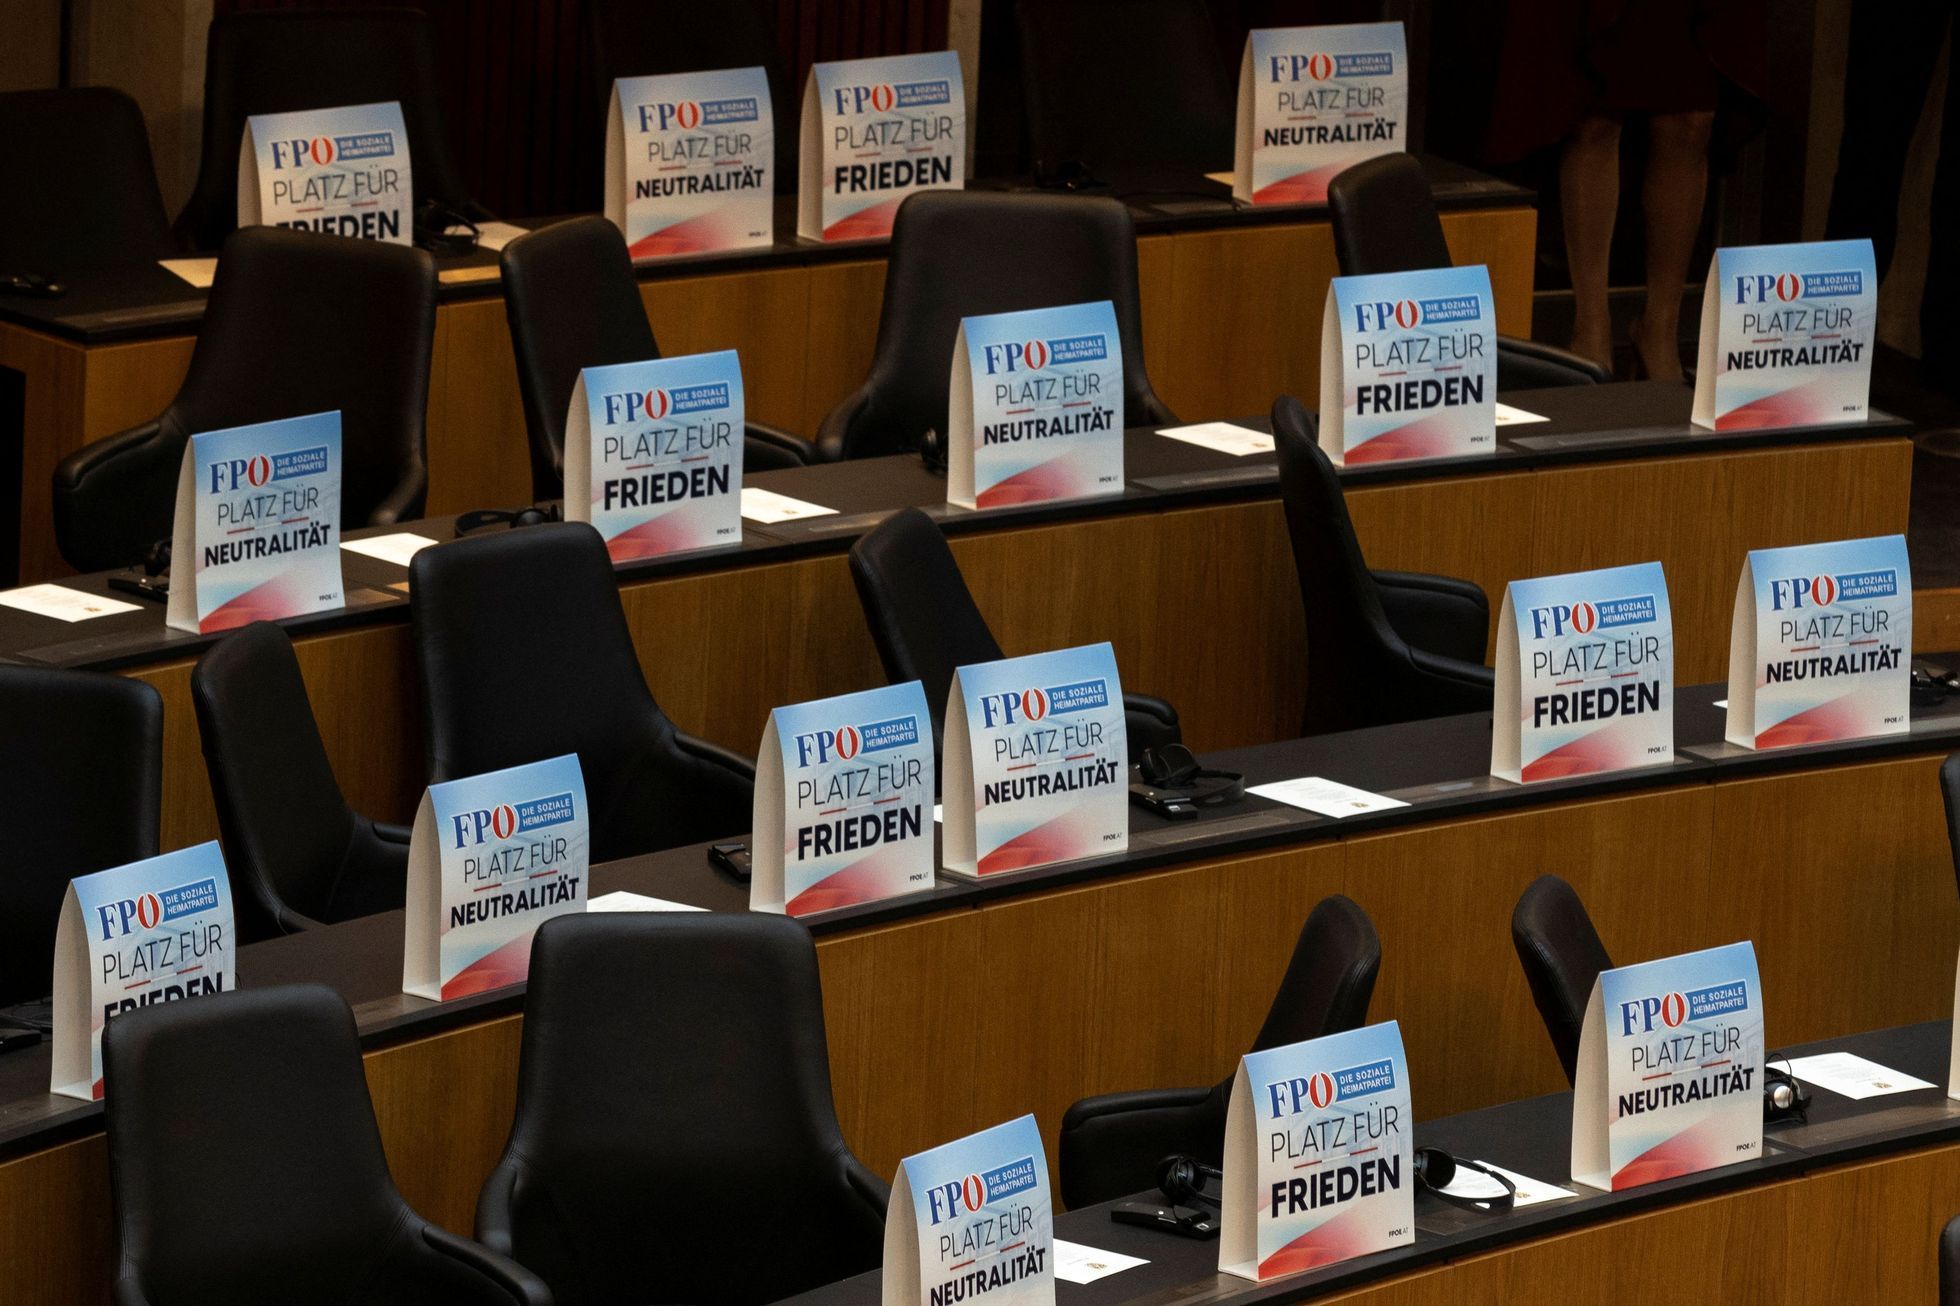 Poslanci Svobodné strany Rakouska (FPÖ) opustili sál v době proslovu ukrajinského prezidenta Volodymyra Zelenského. Na stolech nechali nápisy, že jsou pro mír a neutralitu.